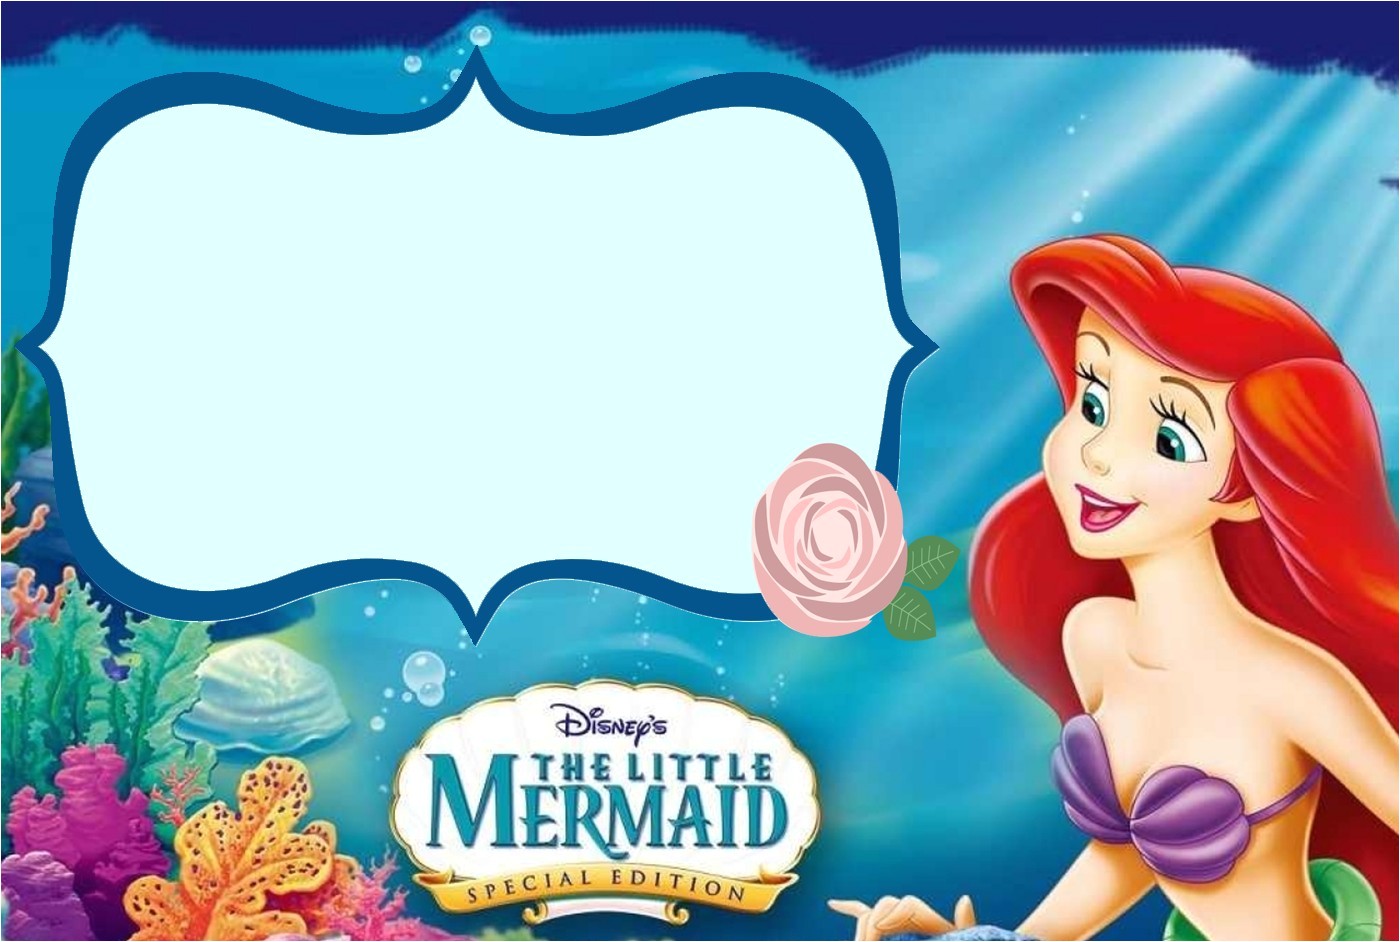 Little Mermaid Birthday Invitation Template the Little Mermaid Invitation Template Invitations Online